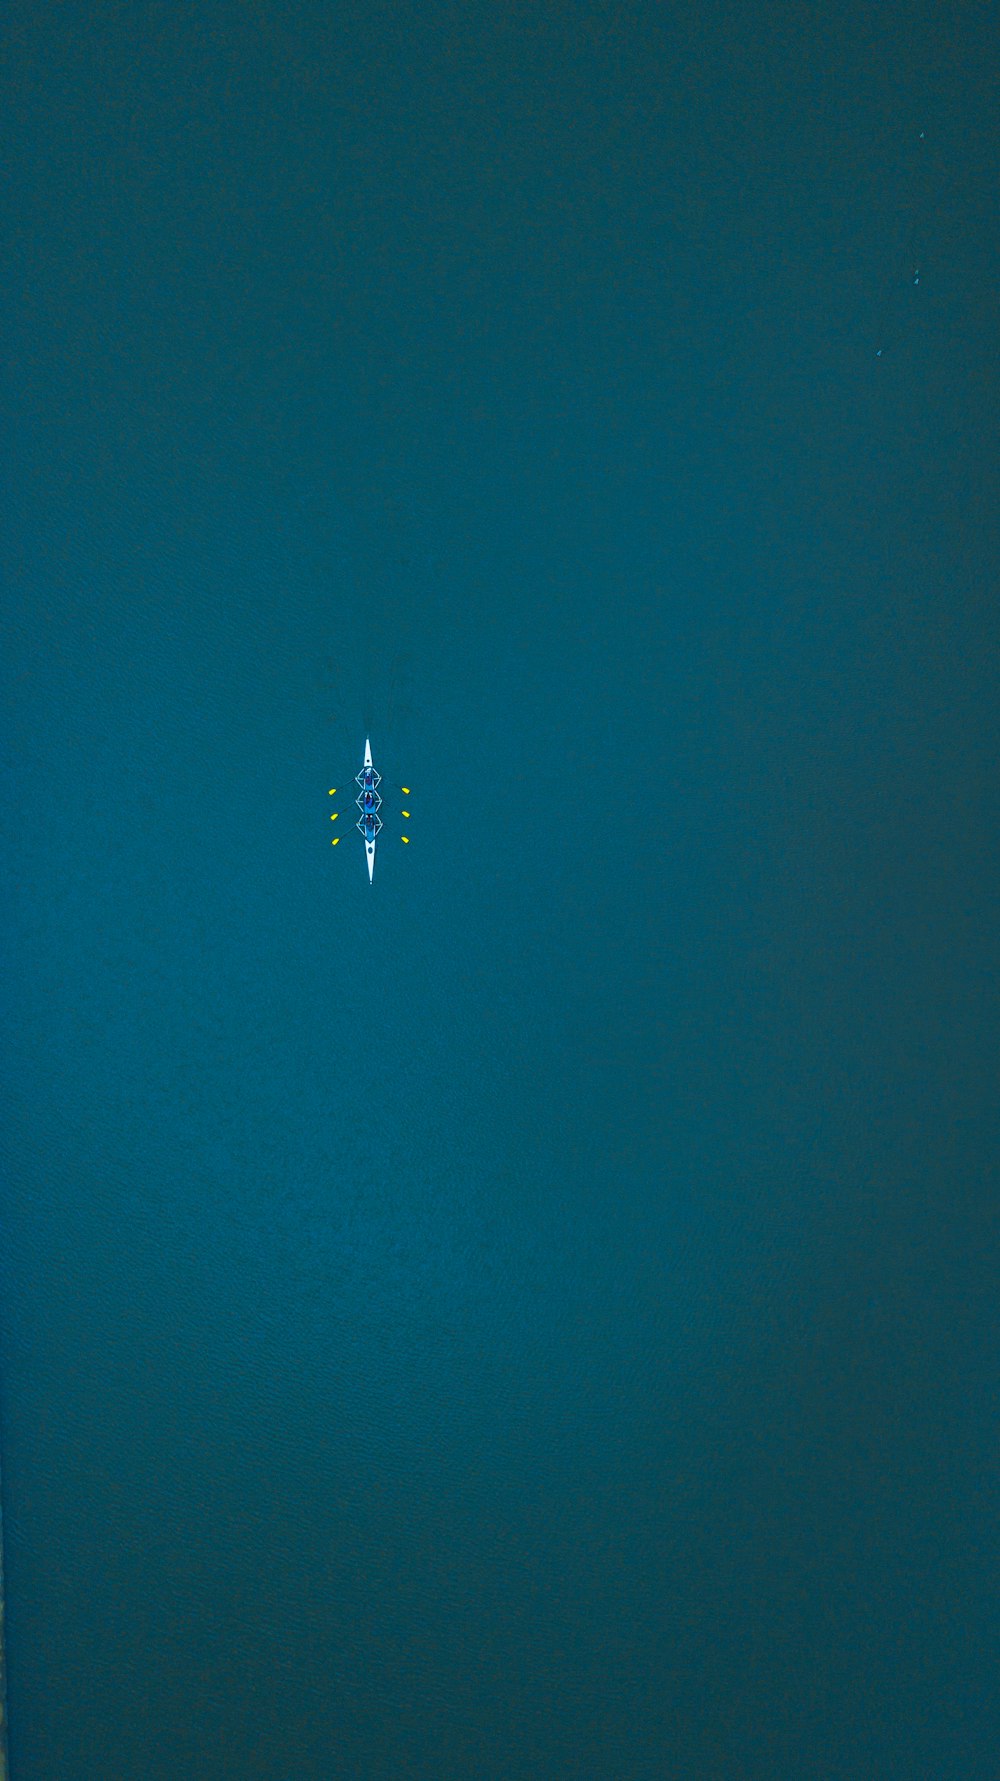 Una vista aerea di una persona su una tavola da surf nell'oceano